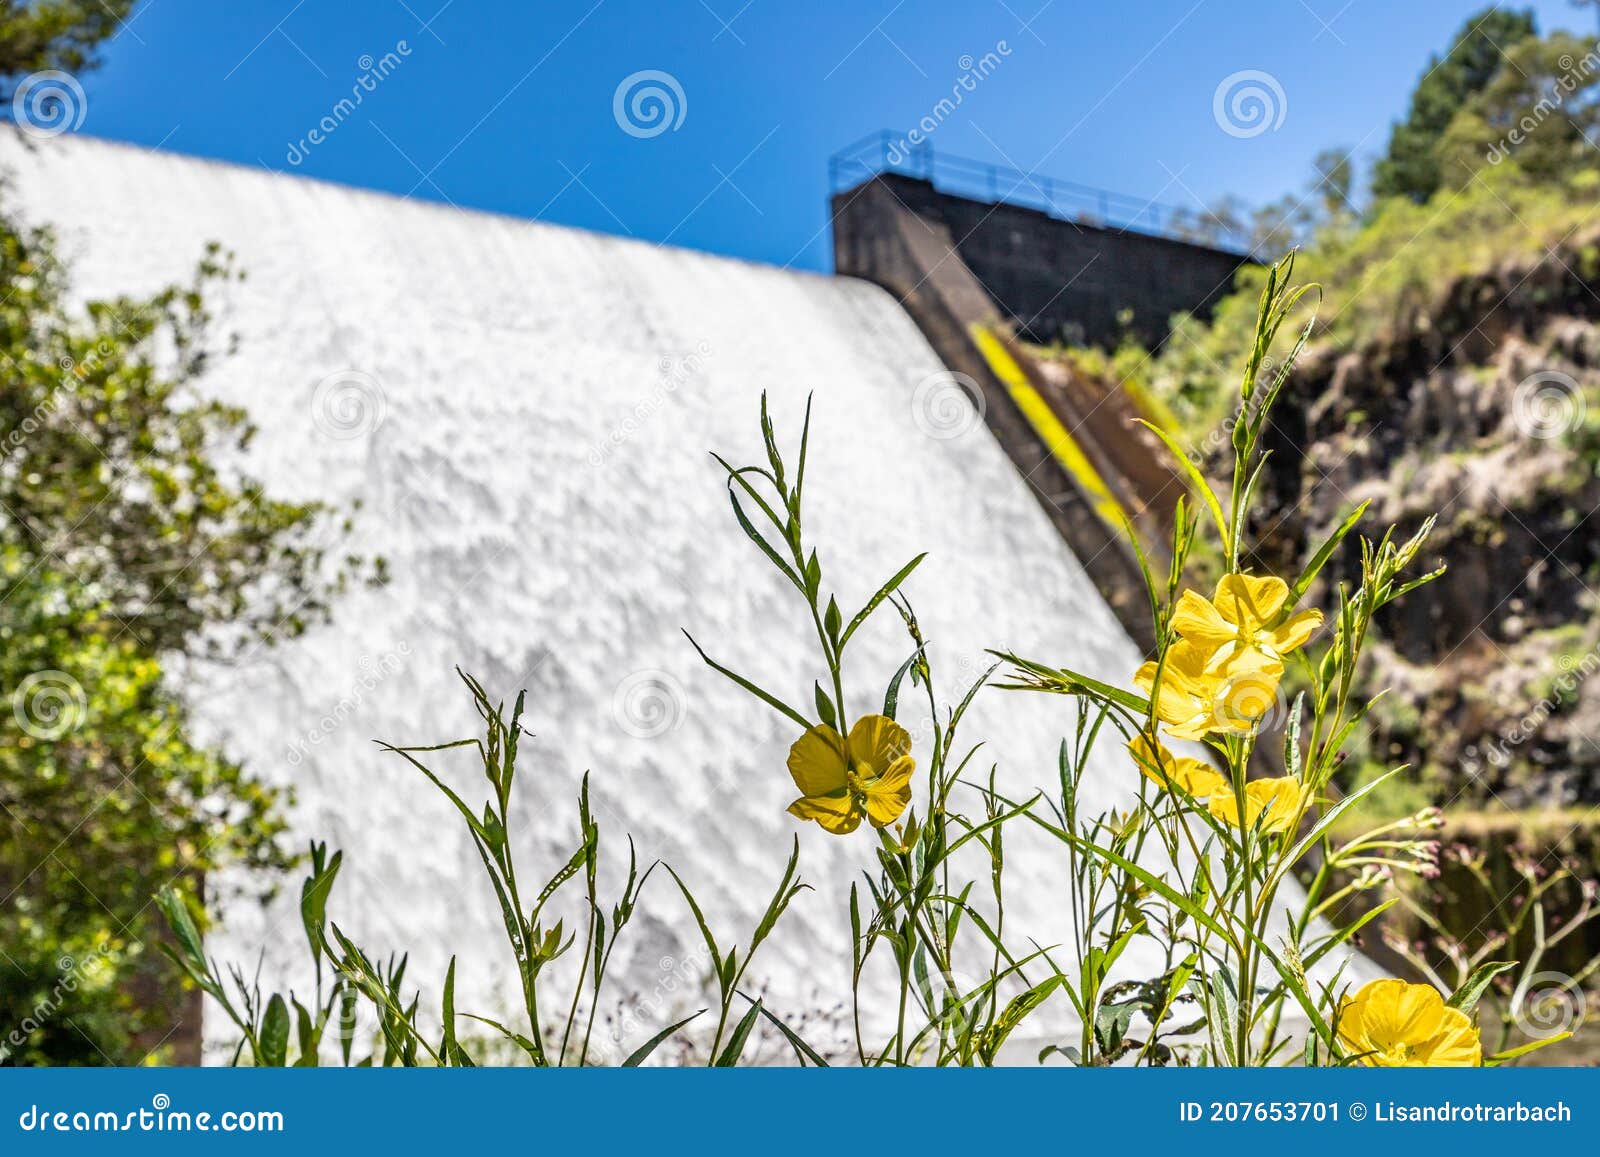 yellow flower and waterfall  in divisa dam